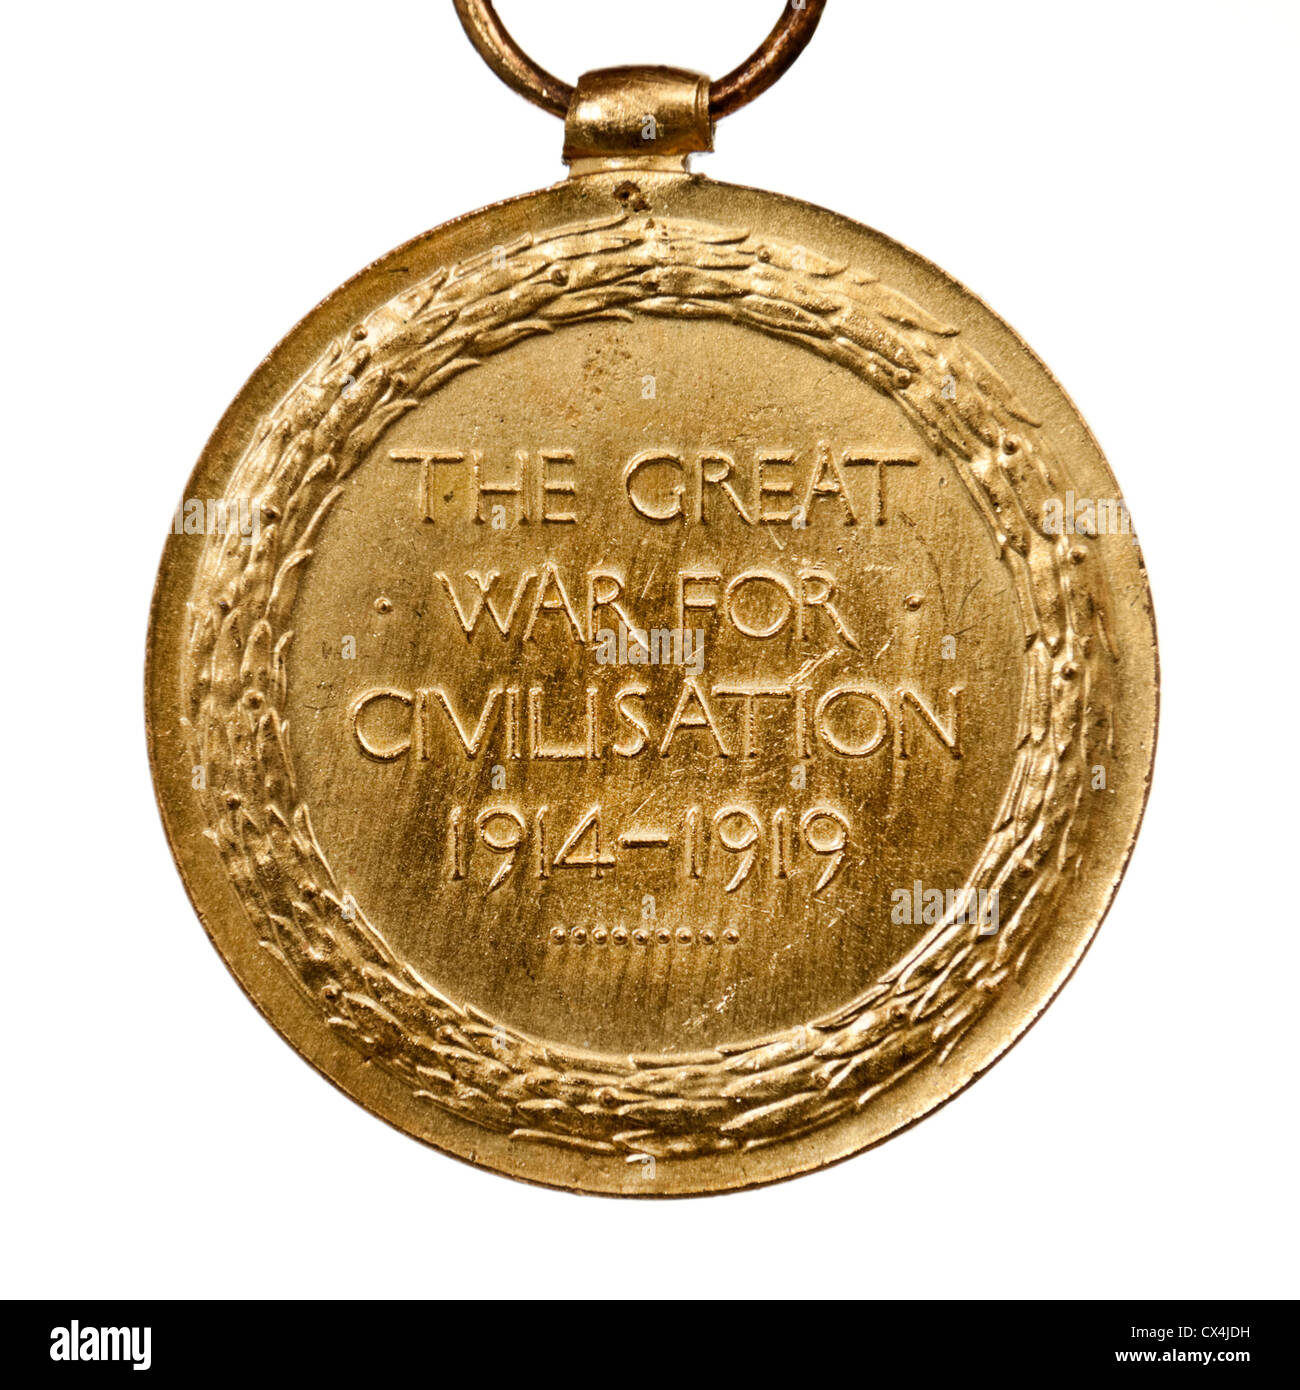 WW1 British 'Victoria' la medalla de la campaña (reverso), adjudicado a G.L. Hatcher (Sapper, Royal Engineers, Nº 217), de Swindon Wilts Foto de stock